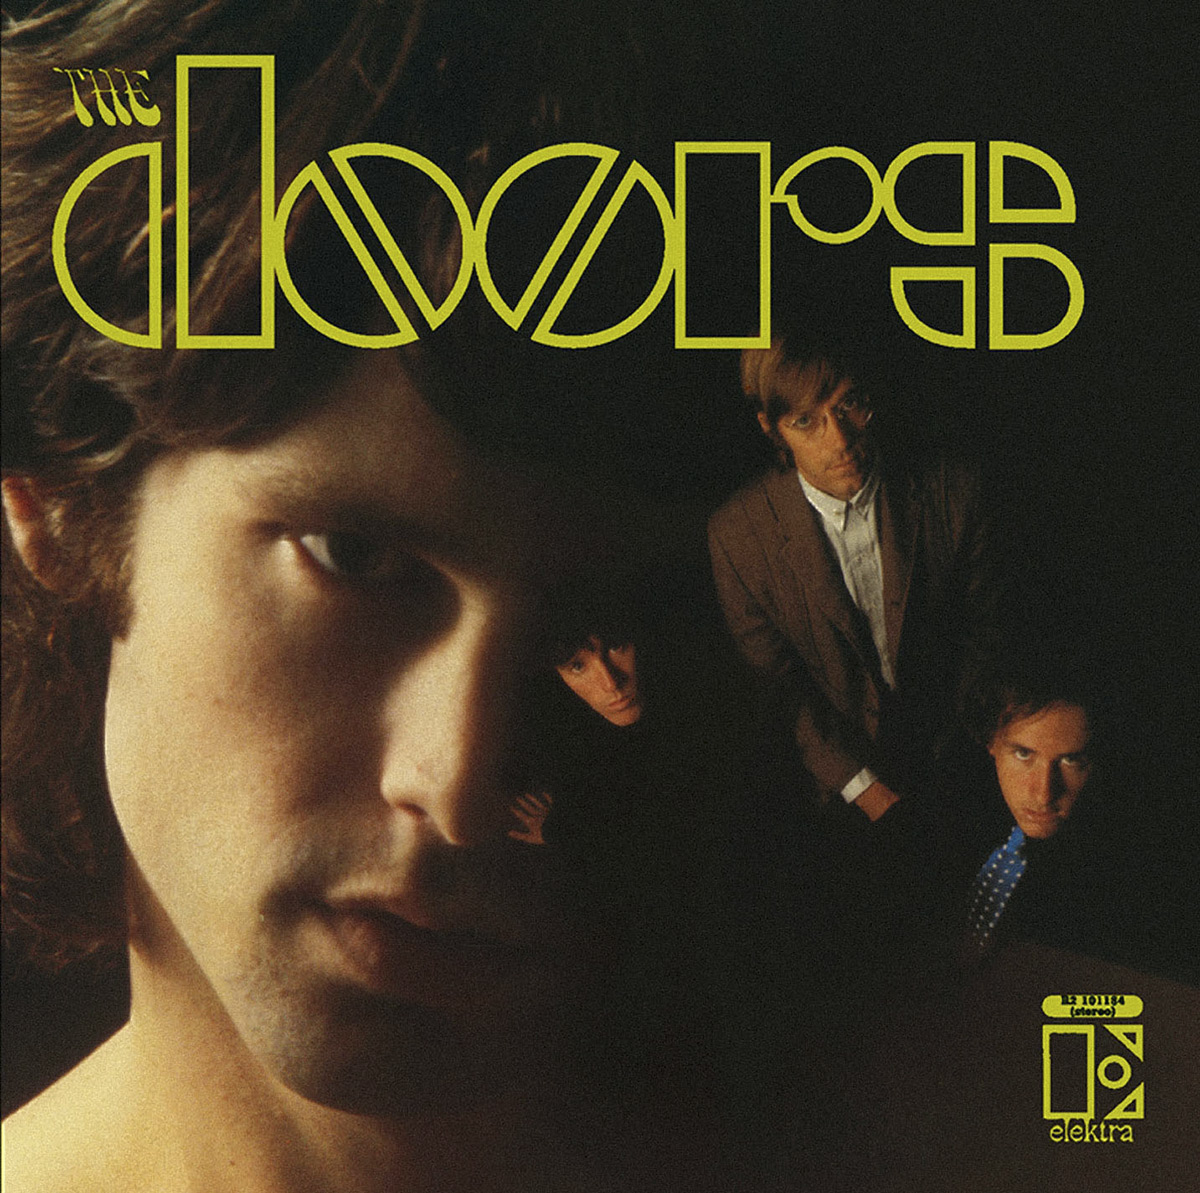 The Doors - The Doors - 1967